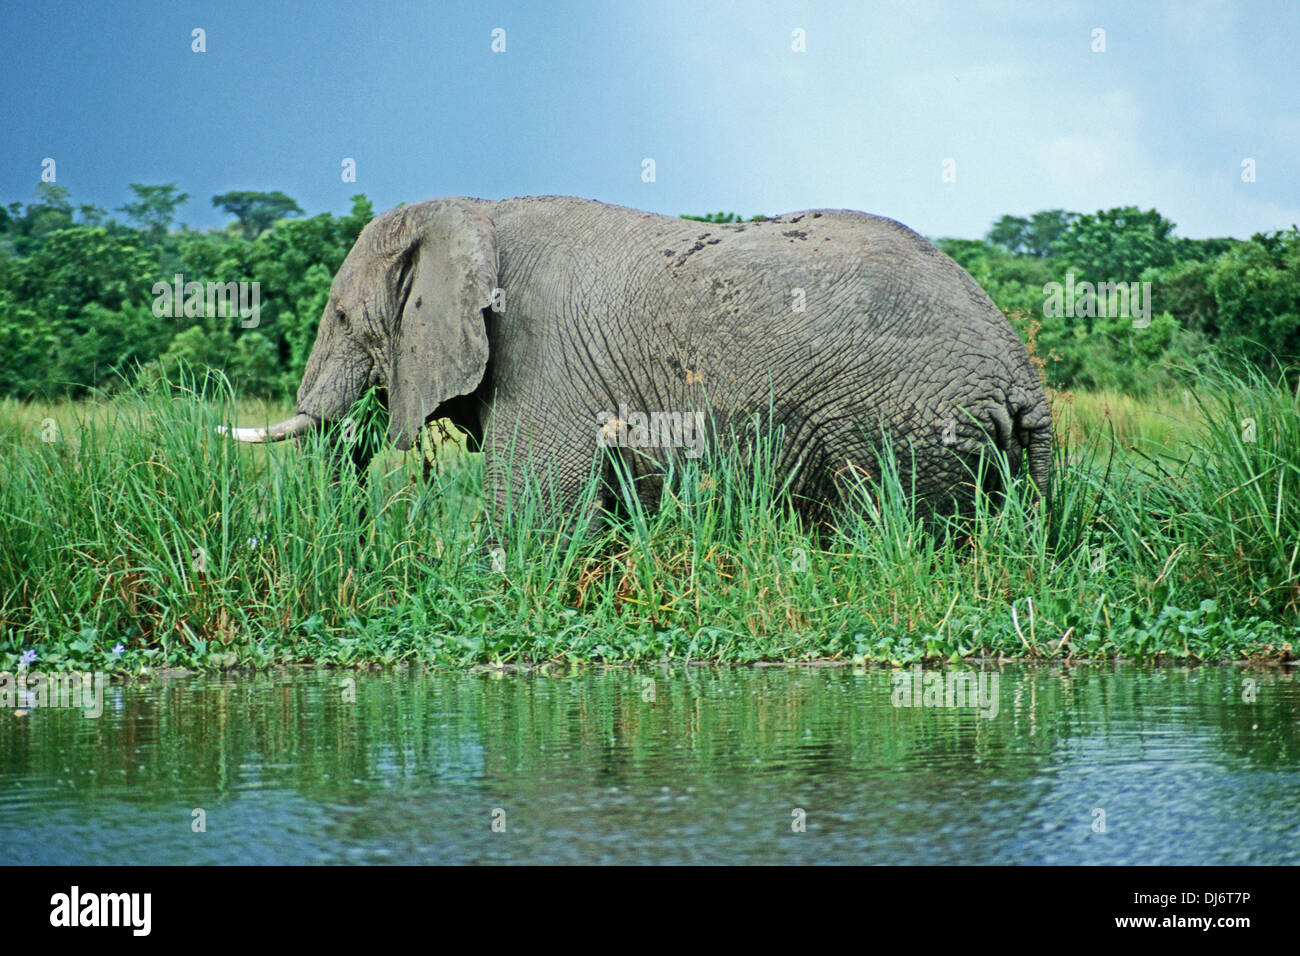 Elephant by Victoria Nile, Uganda Stock Photo